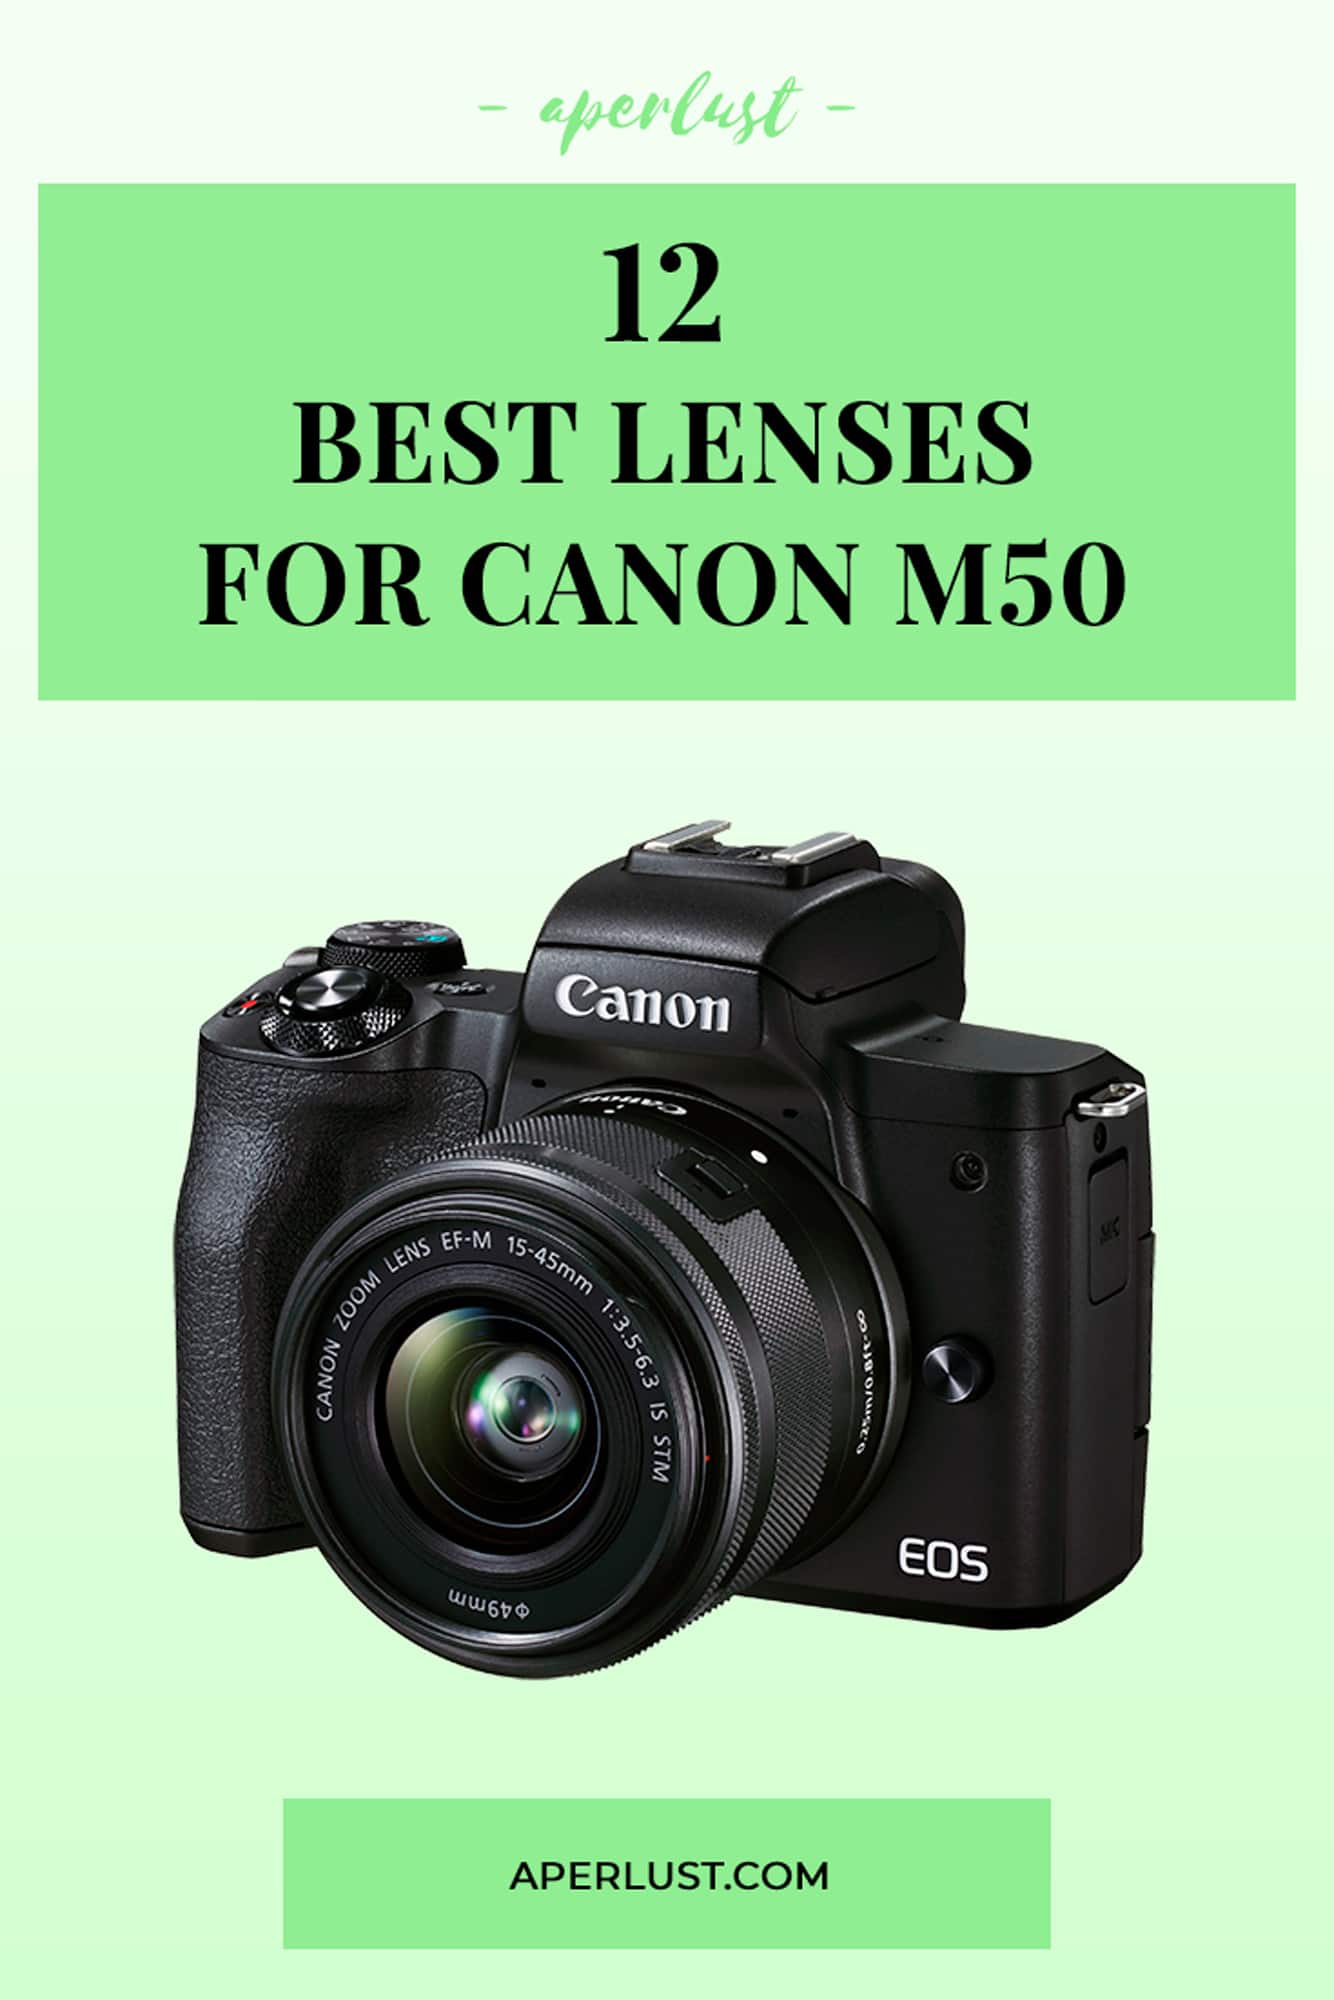 12 best lenses for Canon m50 Pinterest pin